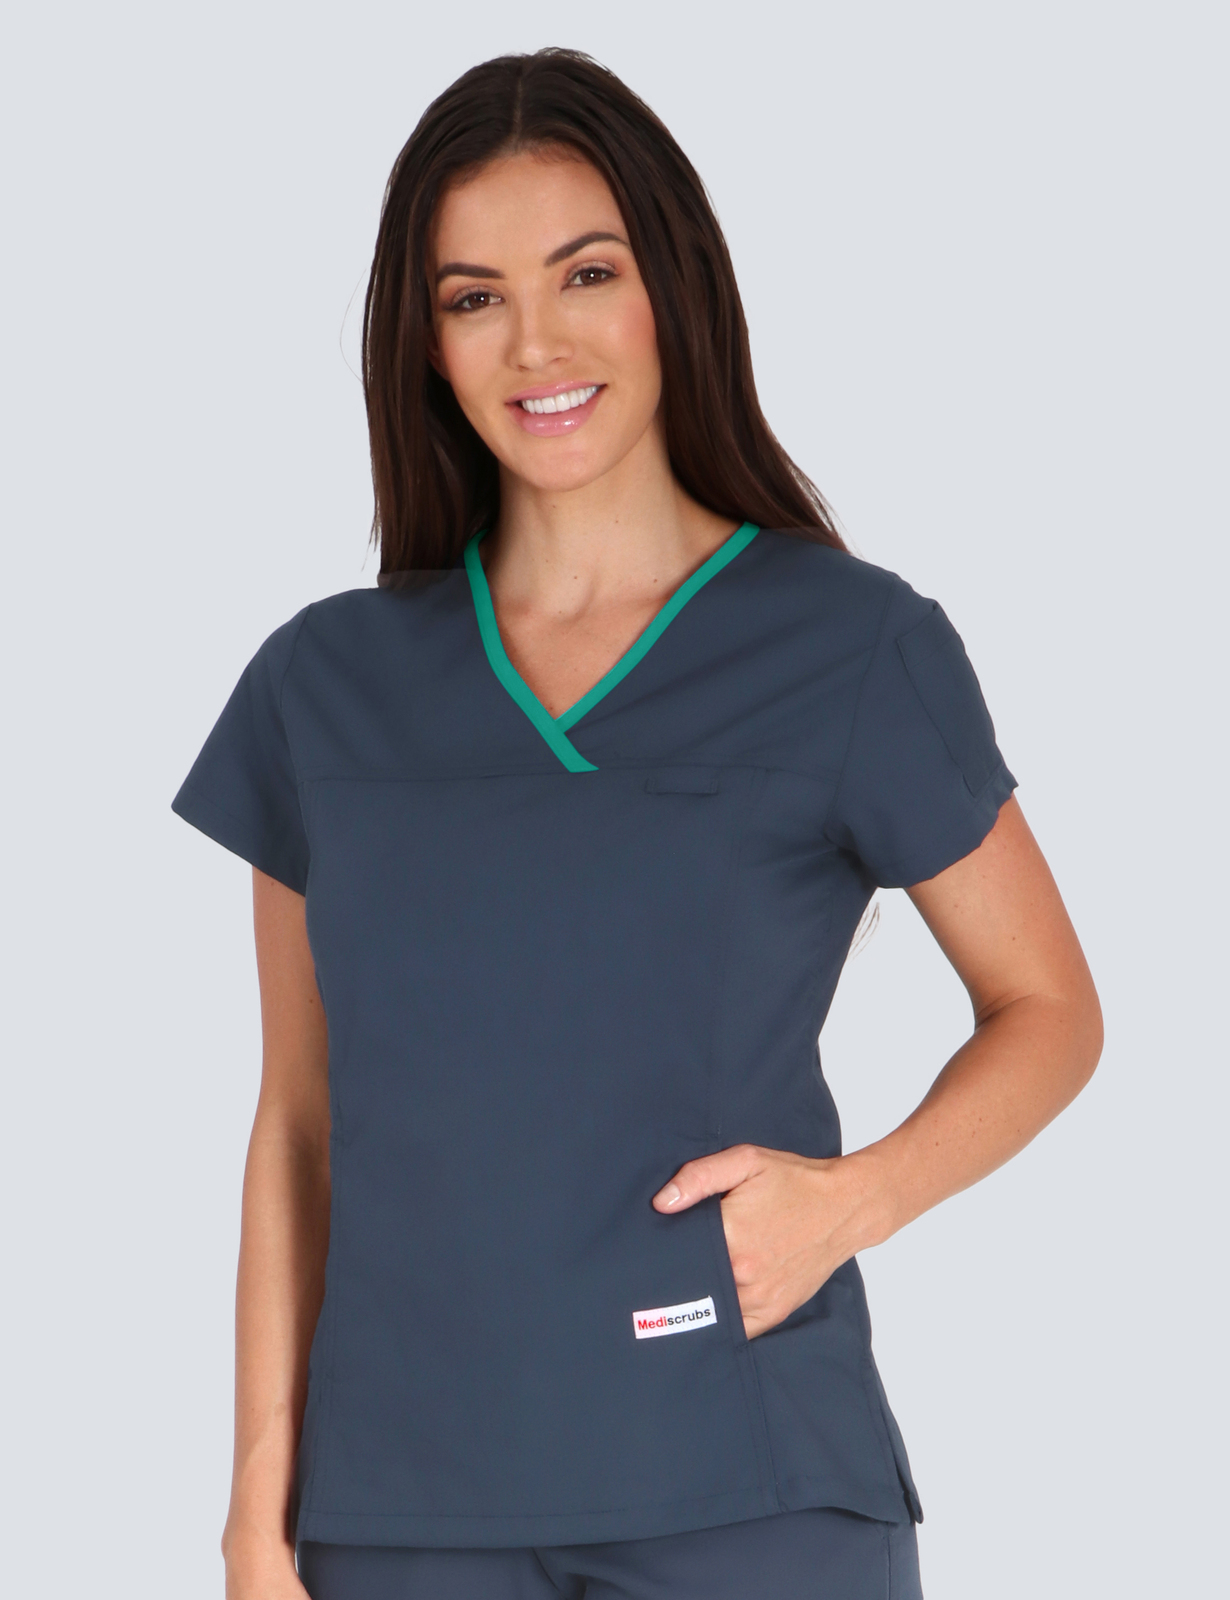 Women's Fit Solid Trim - PNP-NAHLN - Enrolled Nurse